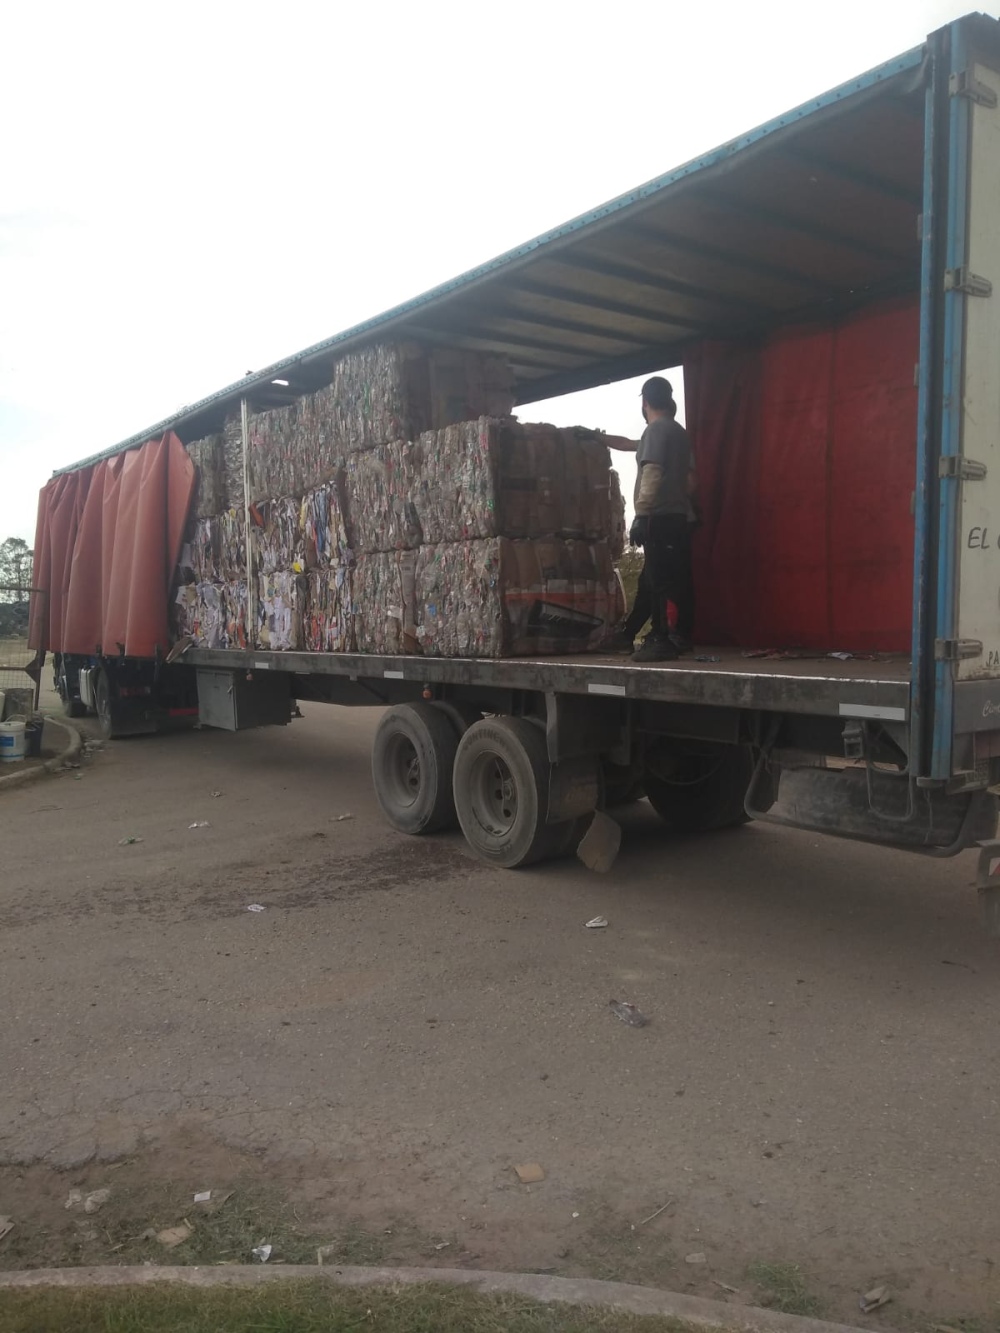 El municipio percibió 2 millones de pesos por venta de residuos